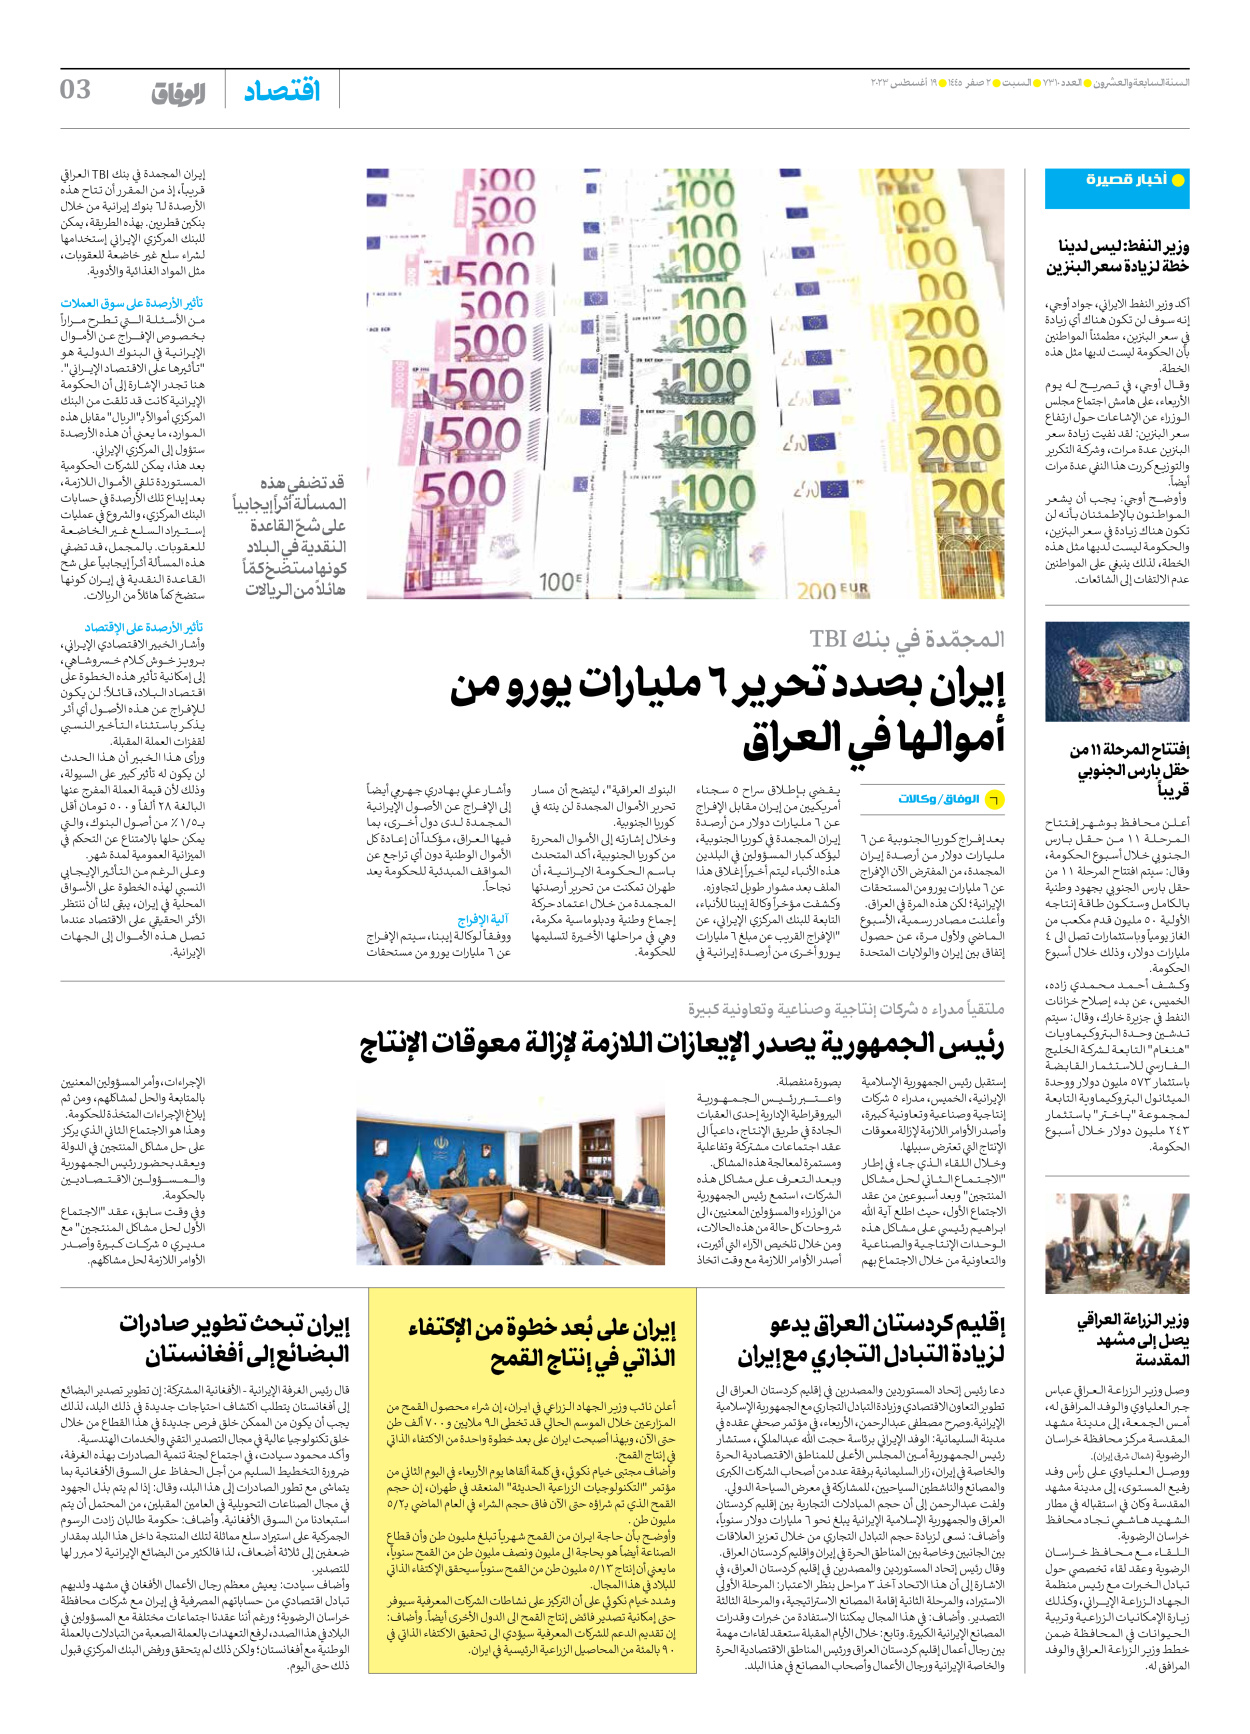 صحیفة ایران الدولیة الوفاق - العدد سبعة آلاف وثلاثمائة وعشرة - ١٩ أغسطس ٢٠٢٣ - الصفحة ۳